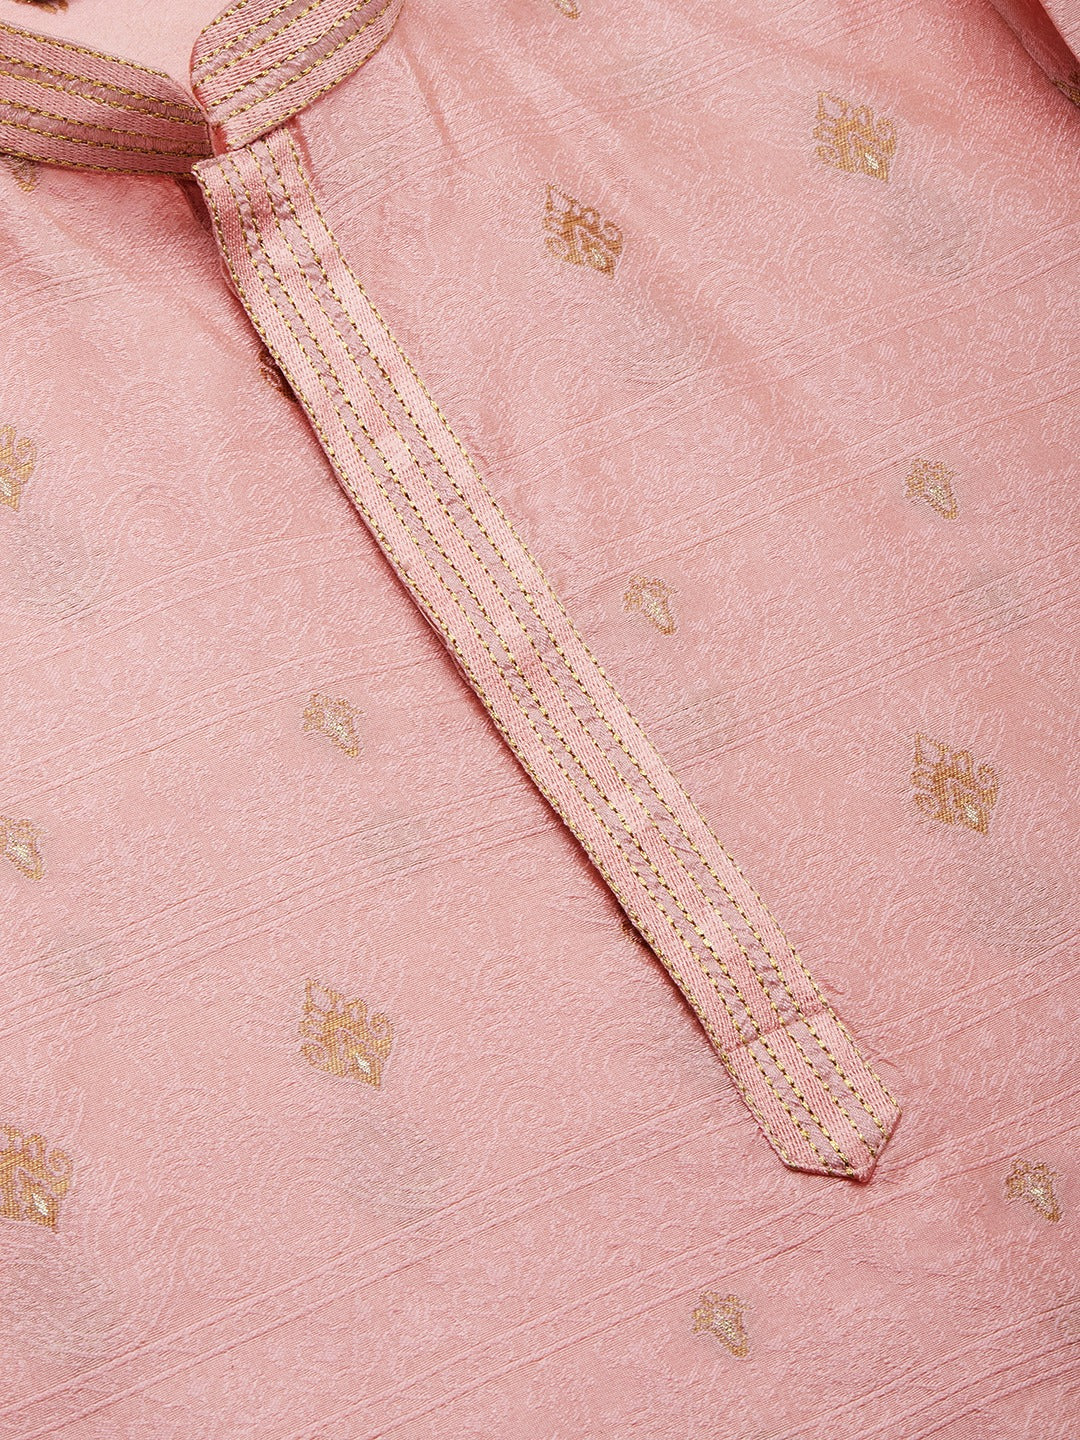 Jompers Men's Pink Coller Embroidered Woven Design Kurta Pyjama ( JOKP 649 Pink )